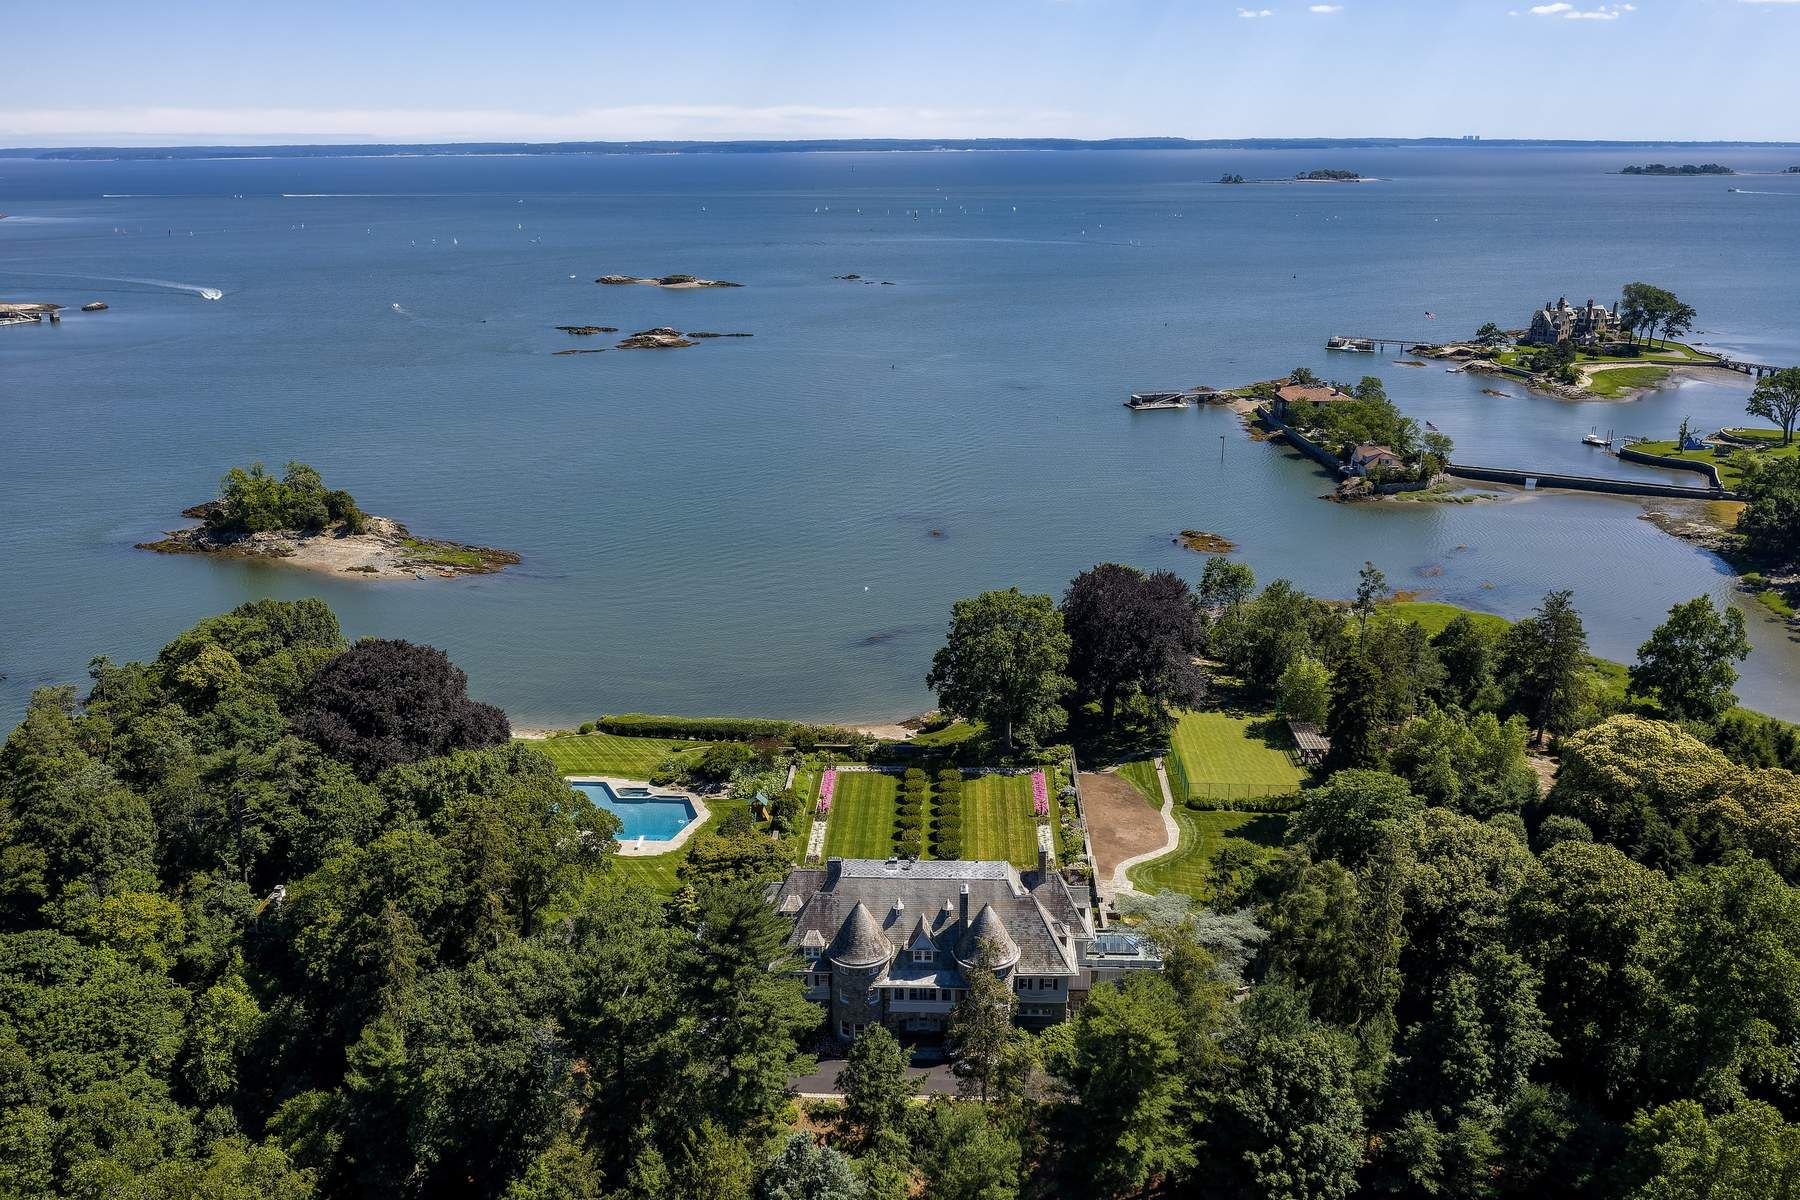 Πωλήθηκε για 127 εκατ. ευρώ – Αυτό είναι το κάποτε ακριβότερο σπίτι της Αμερικής